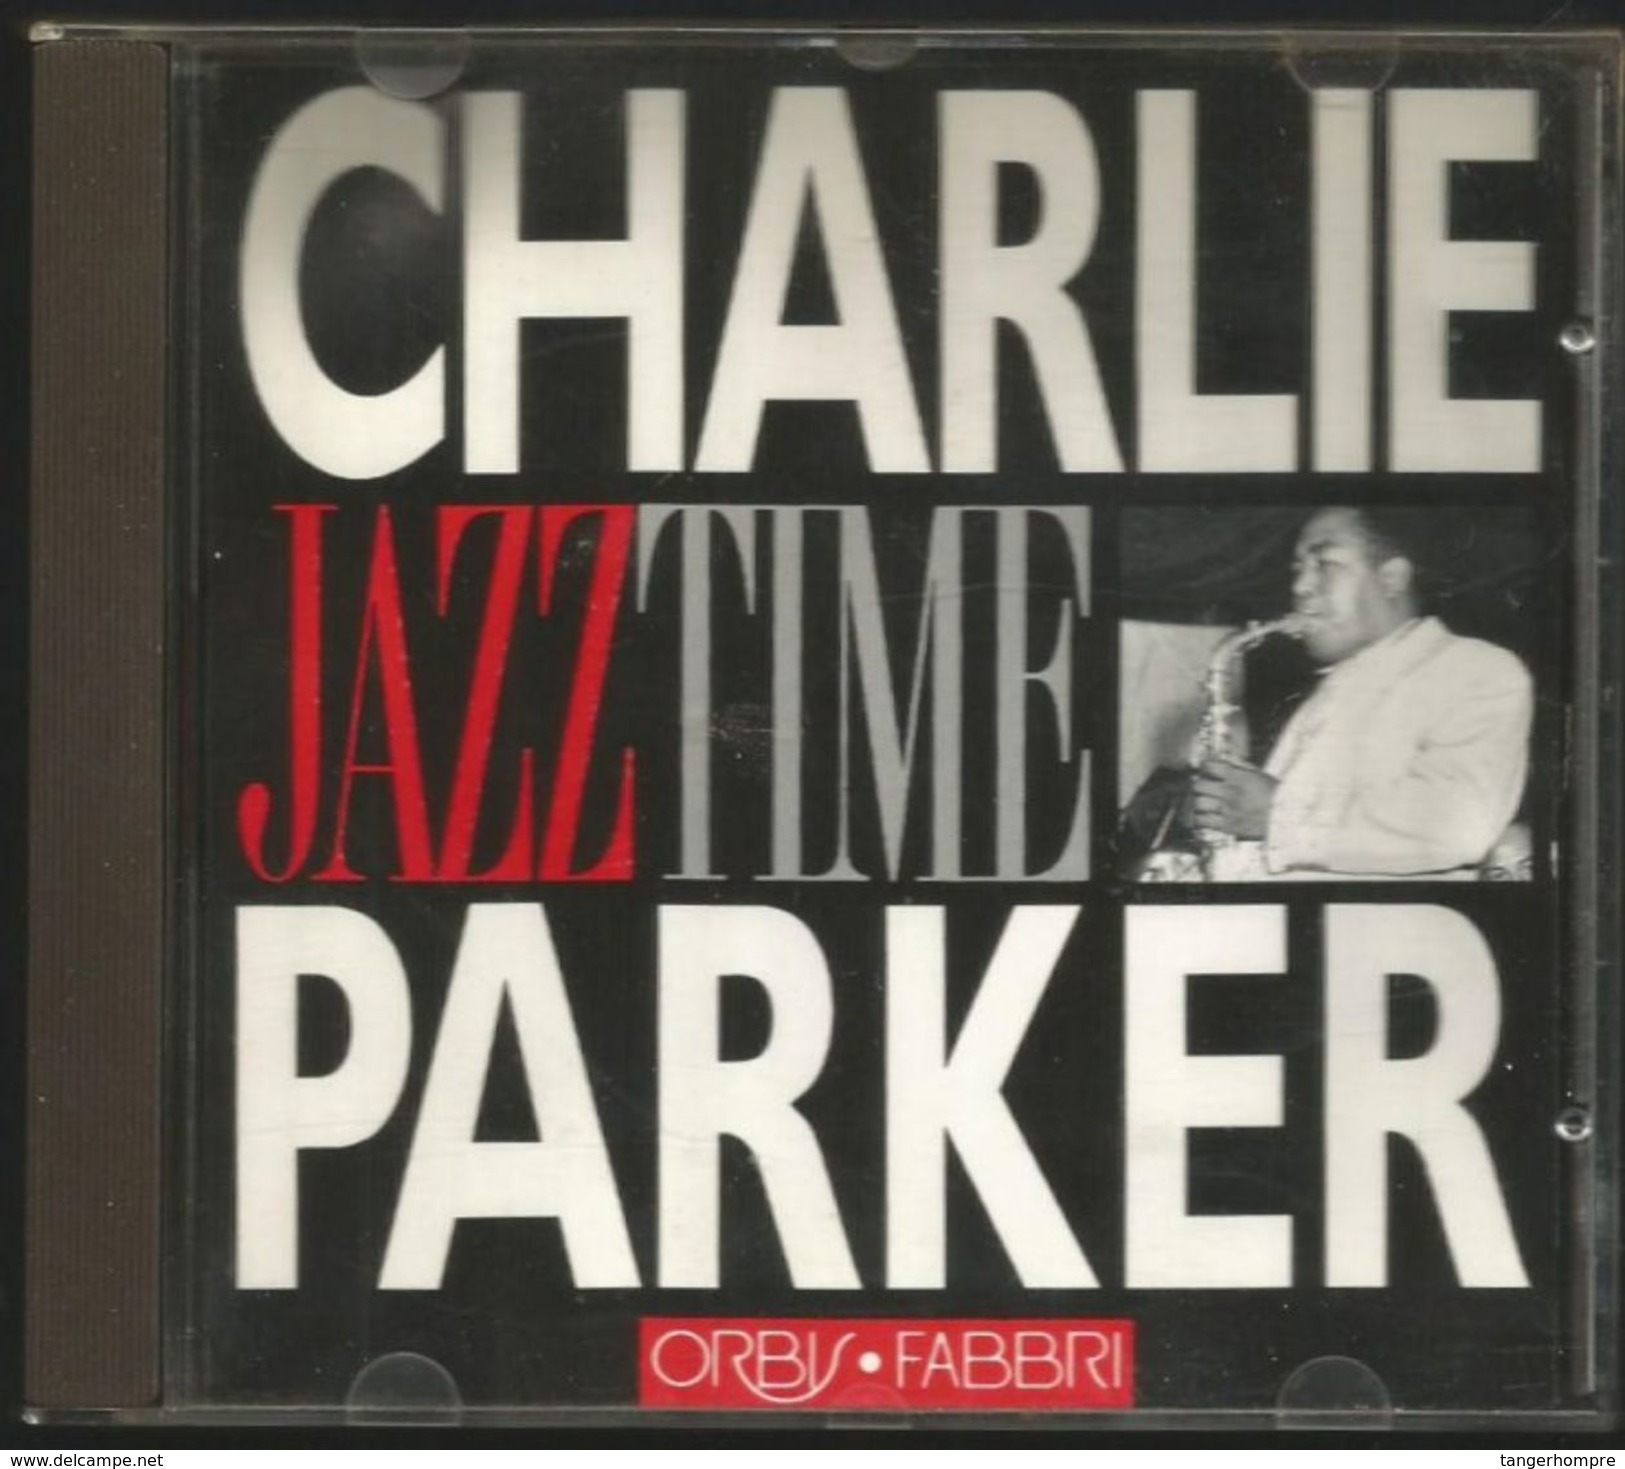 60 Minuten Jazz Von Charlie Parker Von 1955 - 1988 - Jazz Of Finest - From 1955 - 88 - Jazz